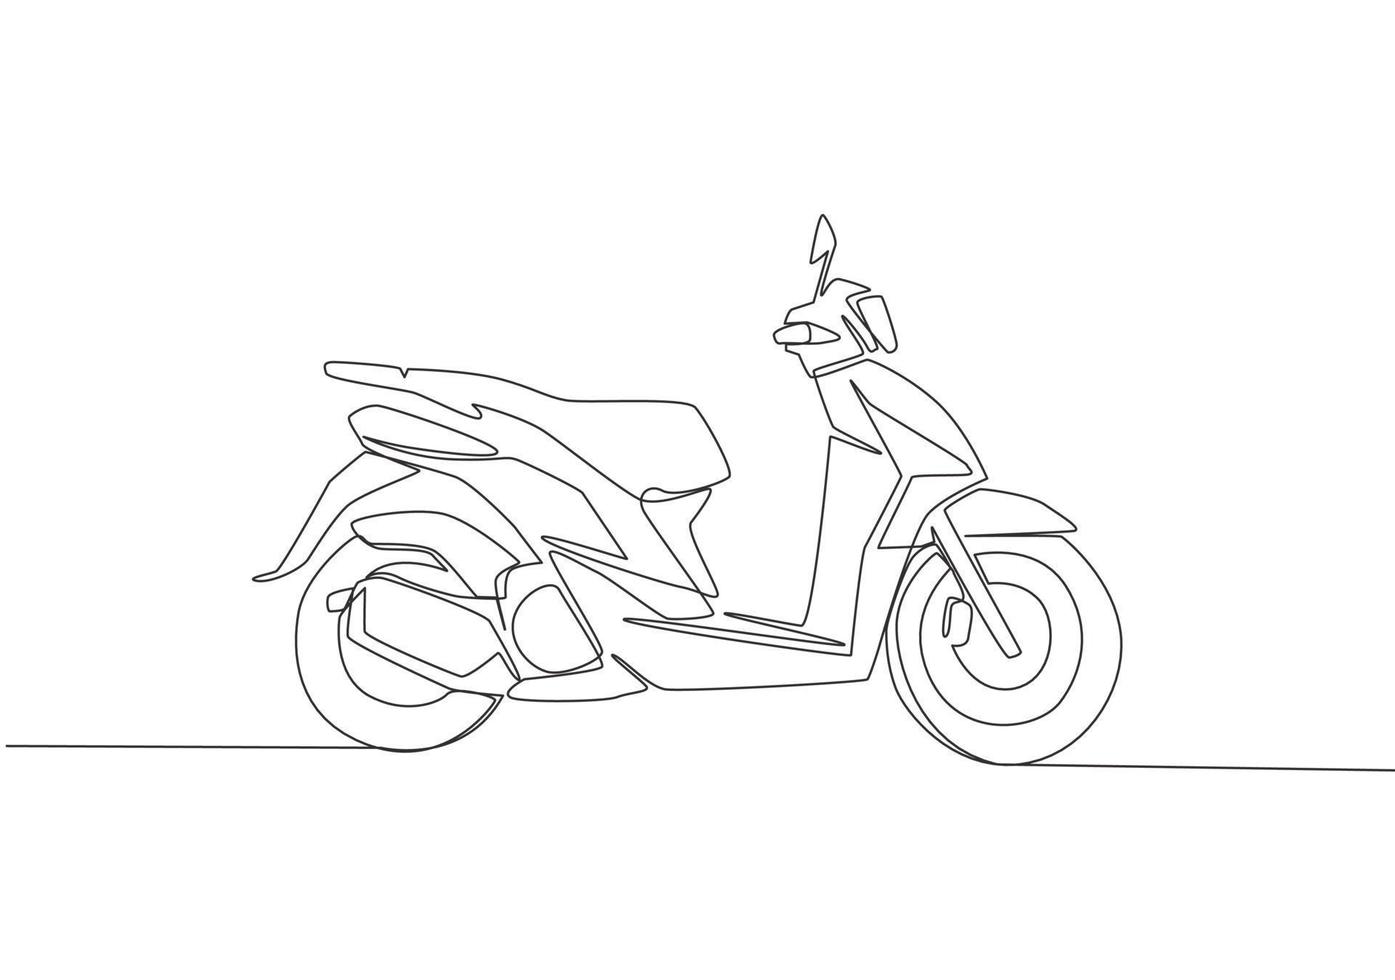 Célibataire continu ligne dessin de classique asiatique dessous moto logo. ancien scooter moto concept. un ligne dessiner conception vecteur illustration